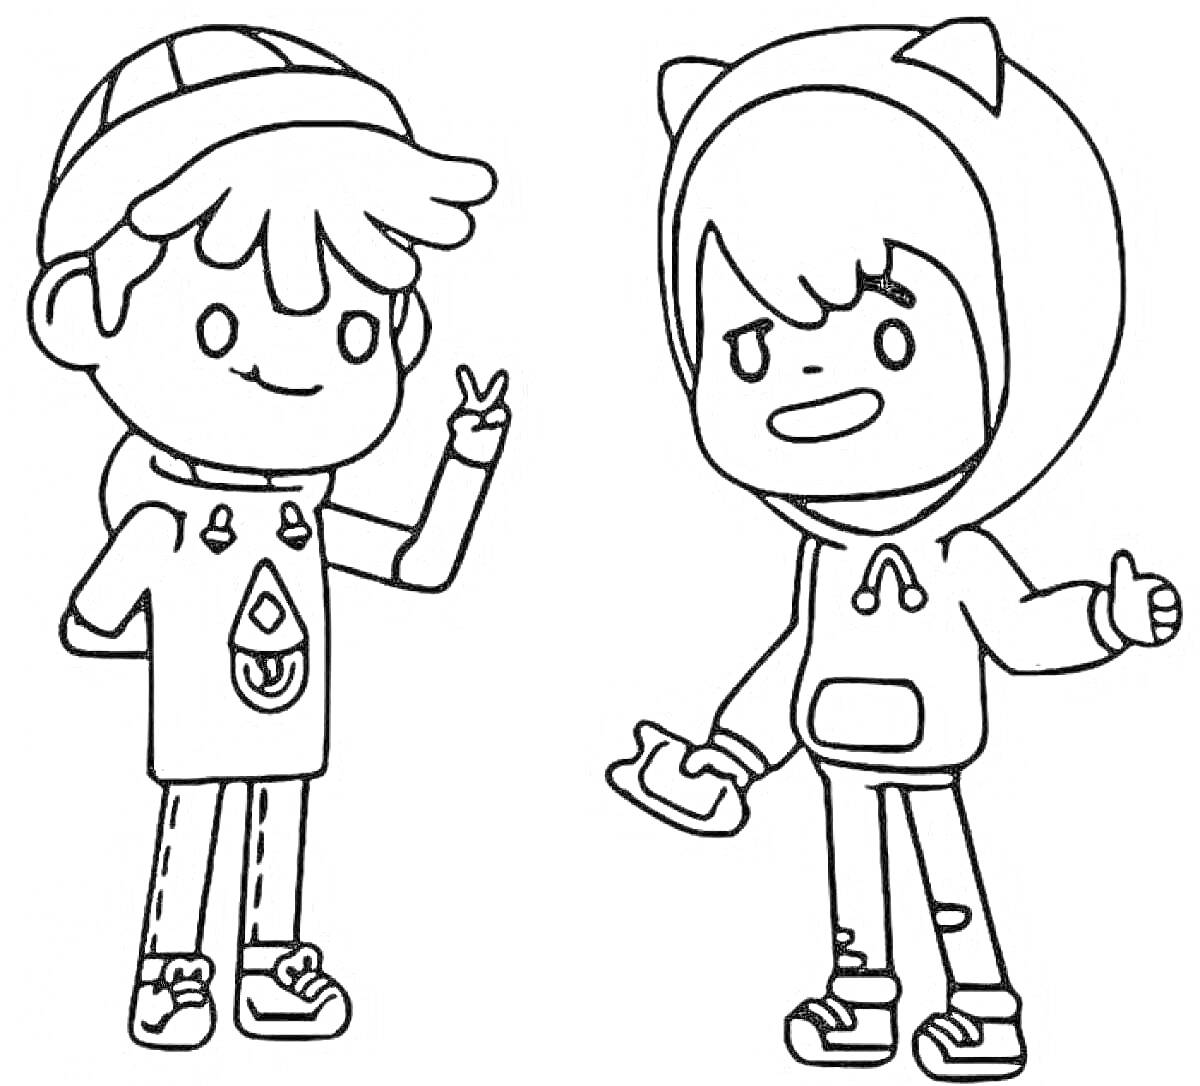 Два персонажа из Toca Boca - мальчик в шапке и футболке с узором и мальчик в худи с кошачьими ушками